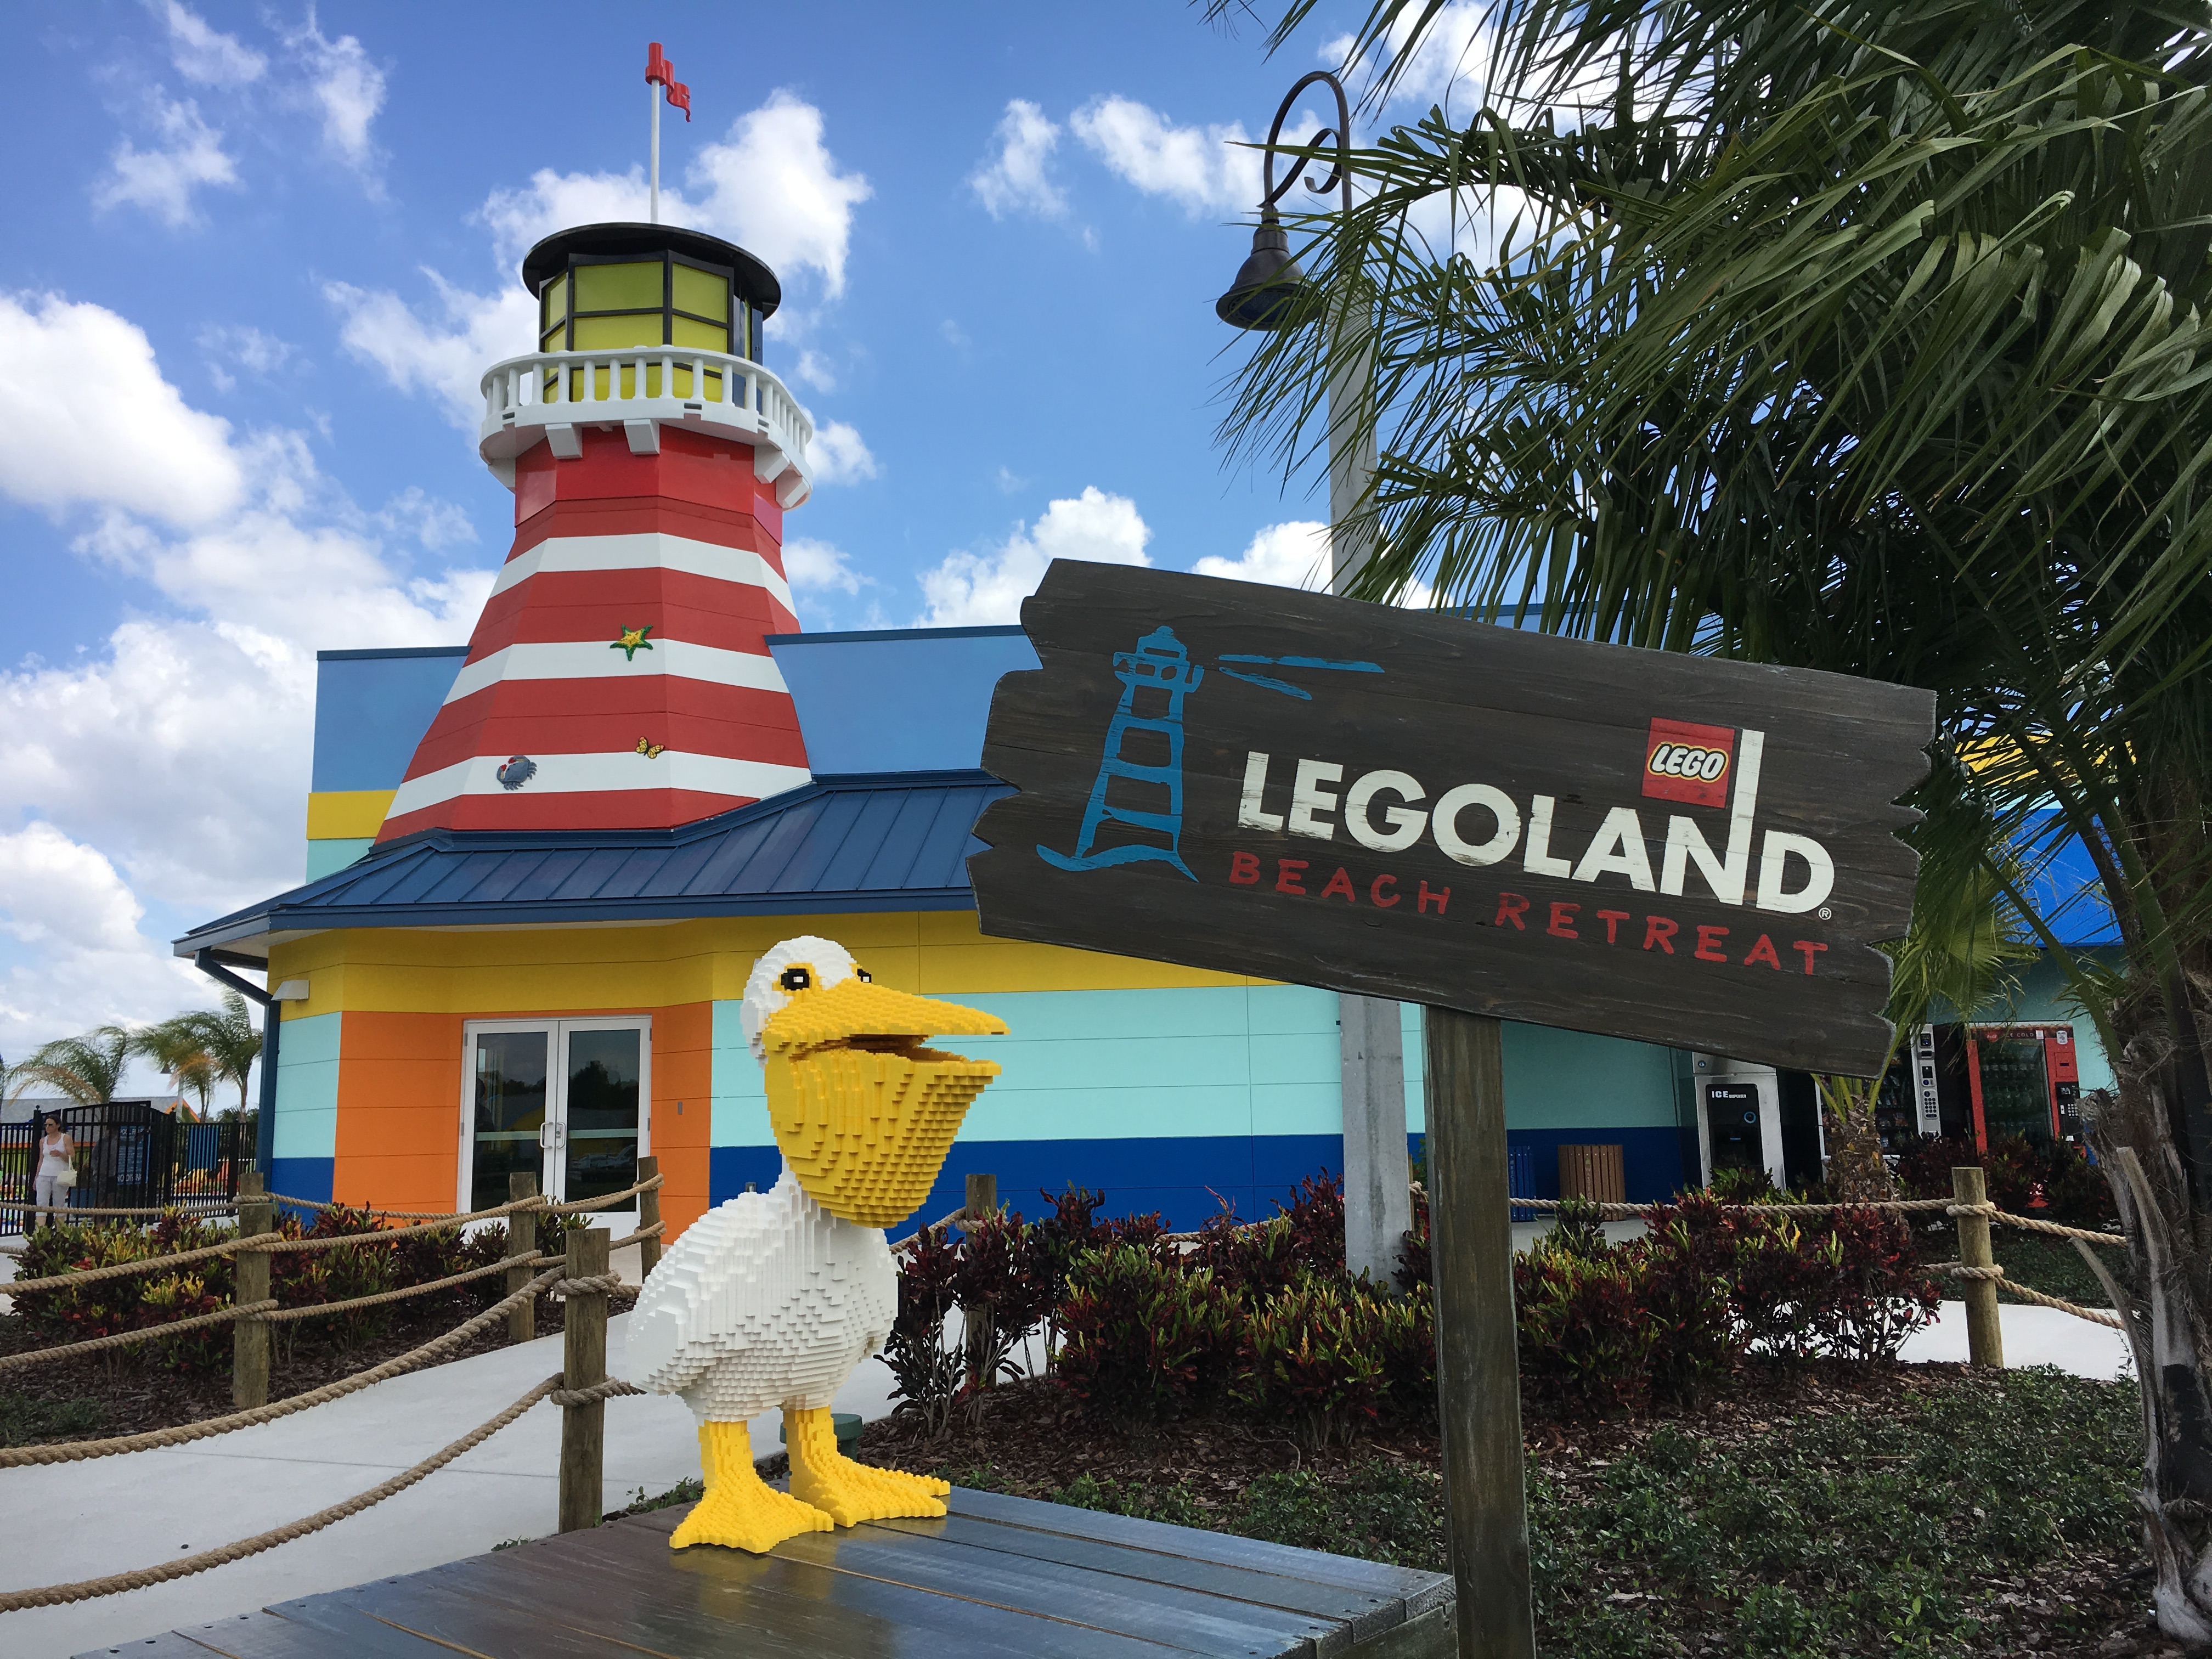 Legoland Beach Retreat Review And Photo Tour Legoland Florida